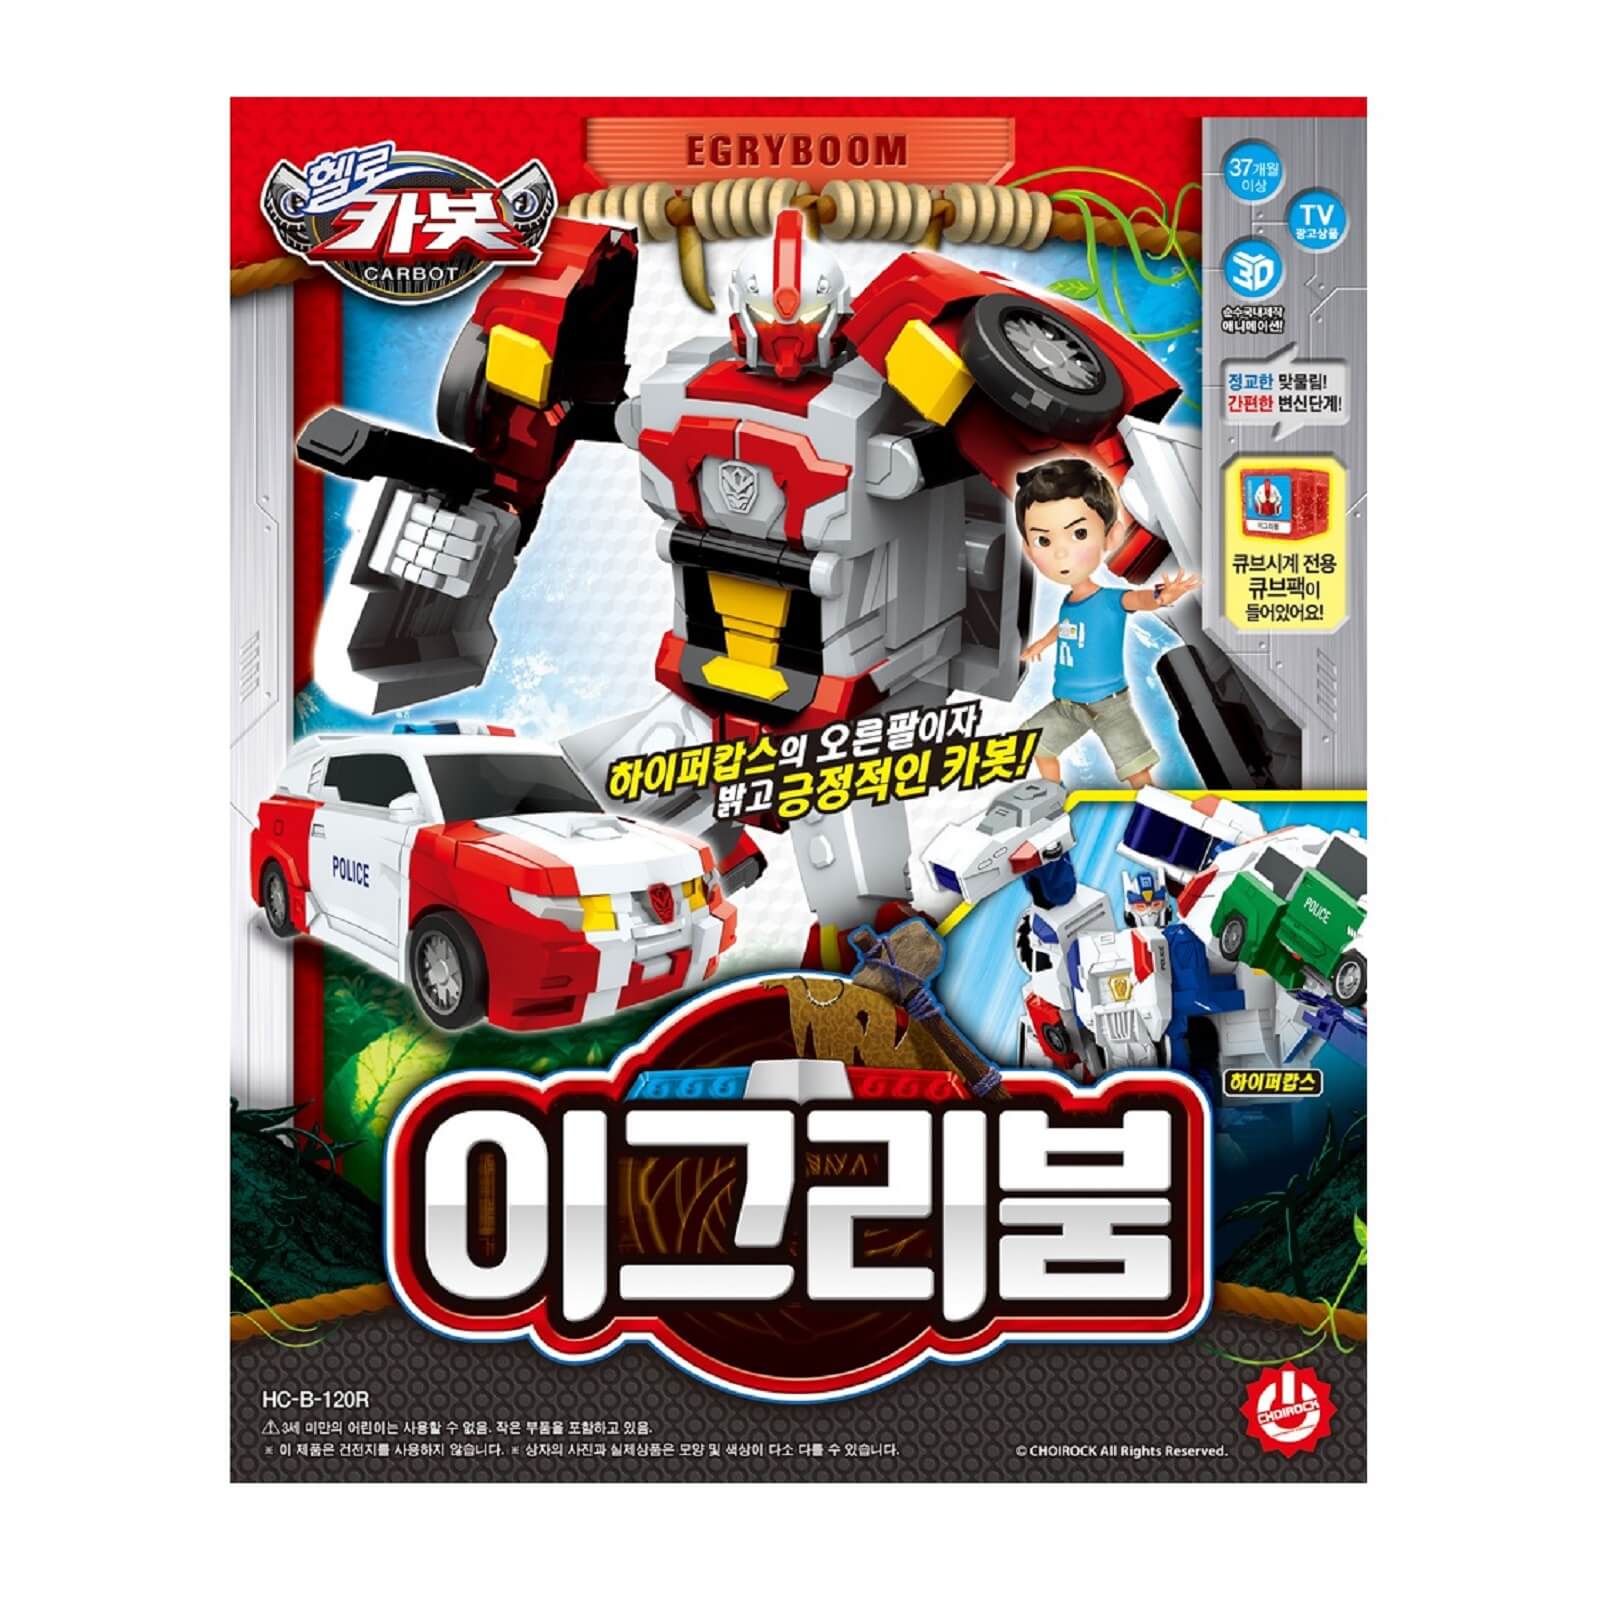 ハローカーボット イグリブーム イグリーブーム 韓国変身ロボット Carbot Egryboom